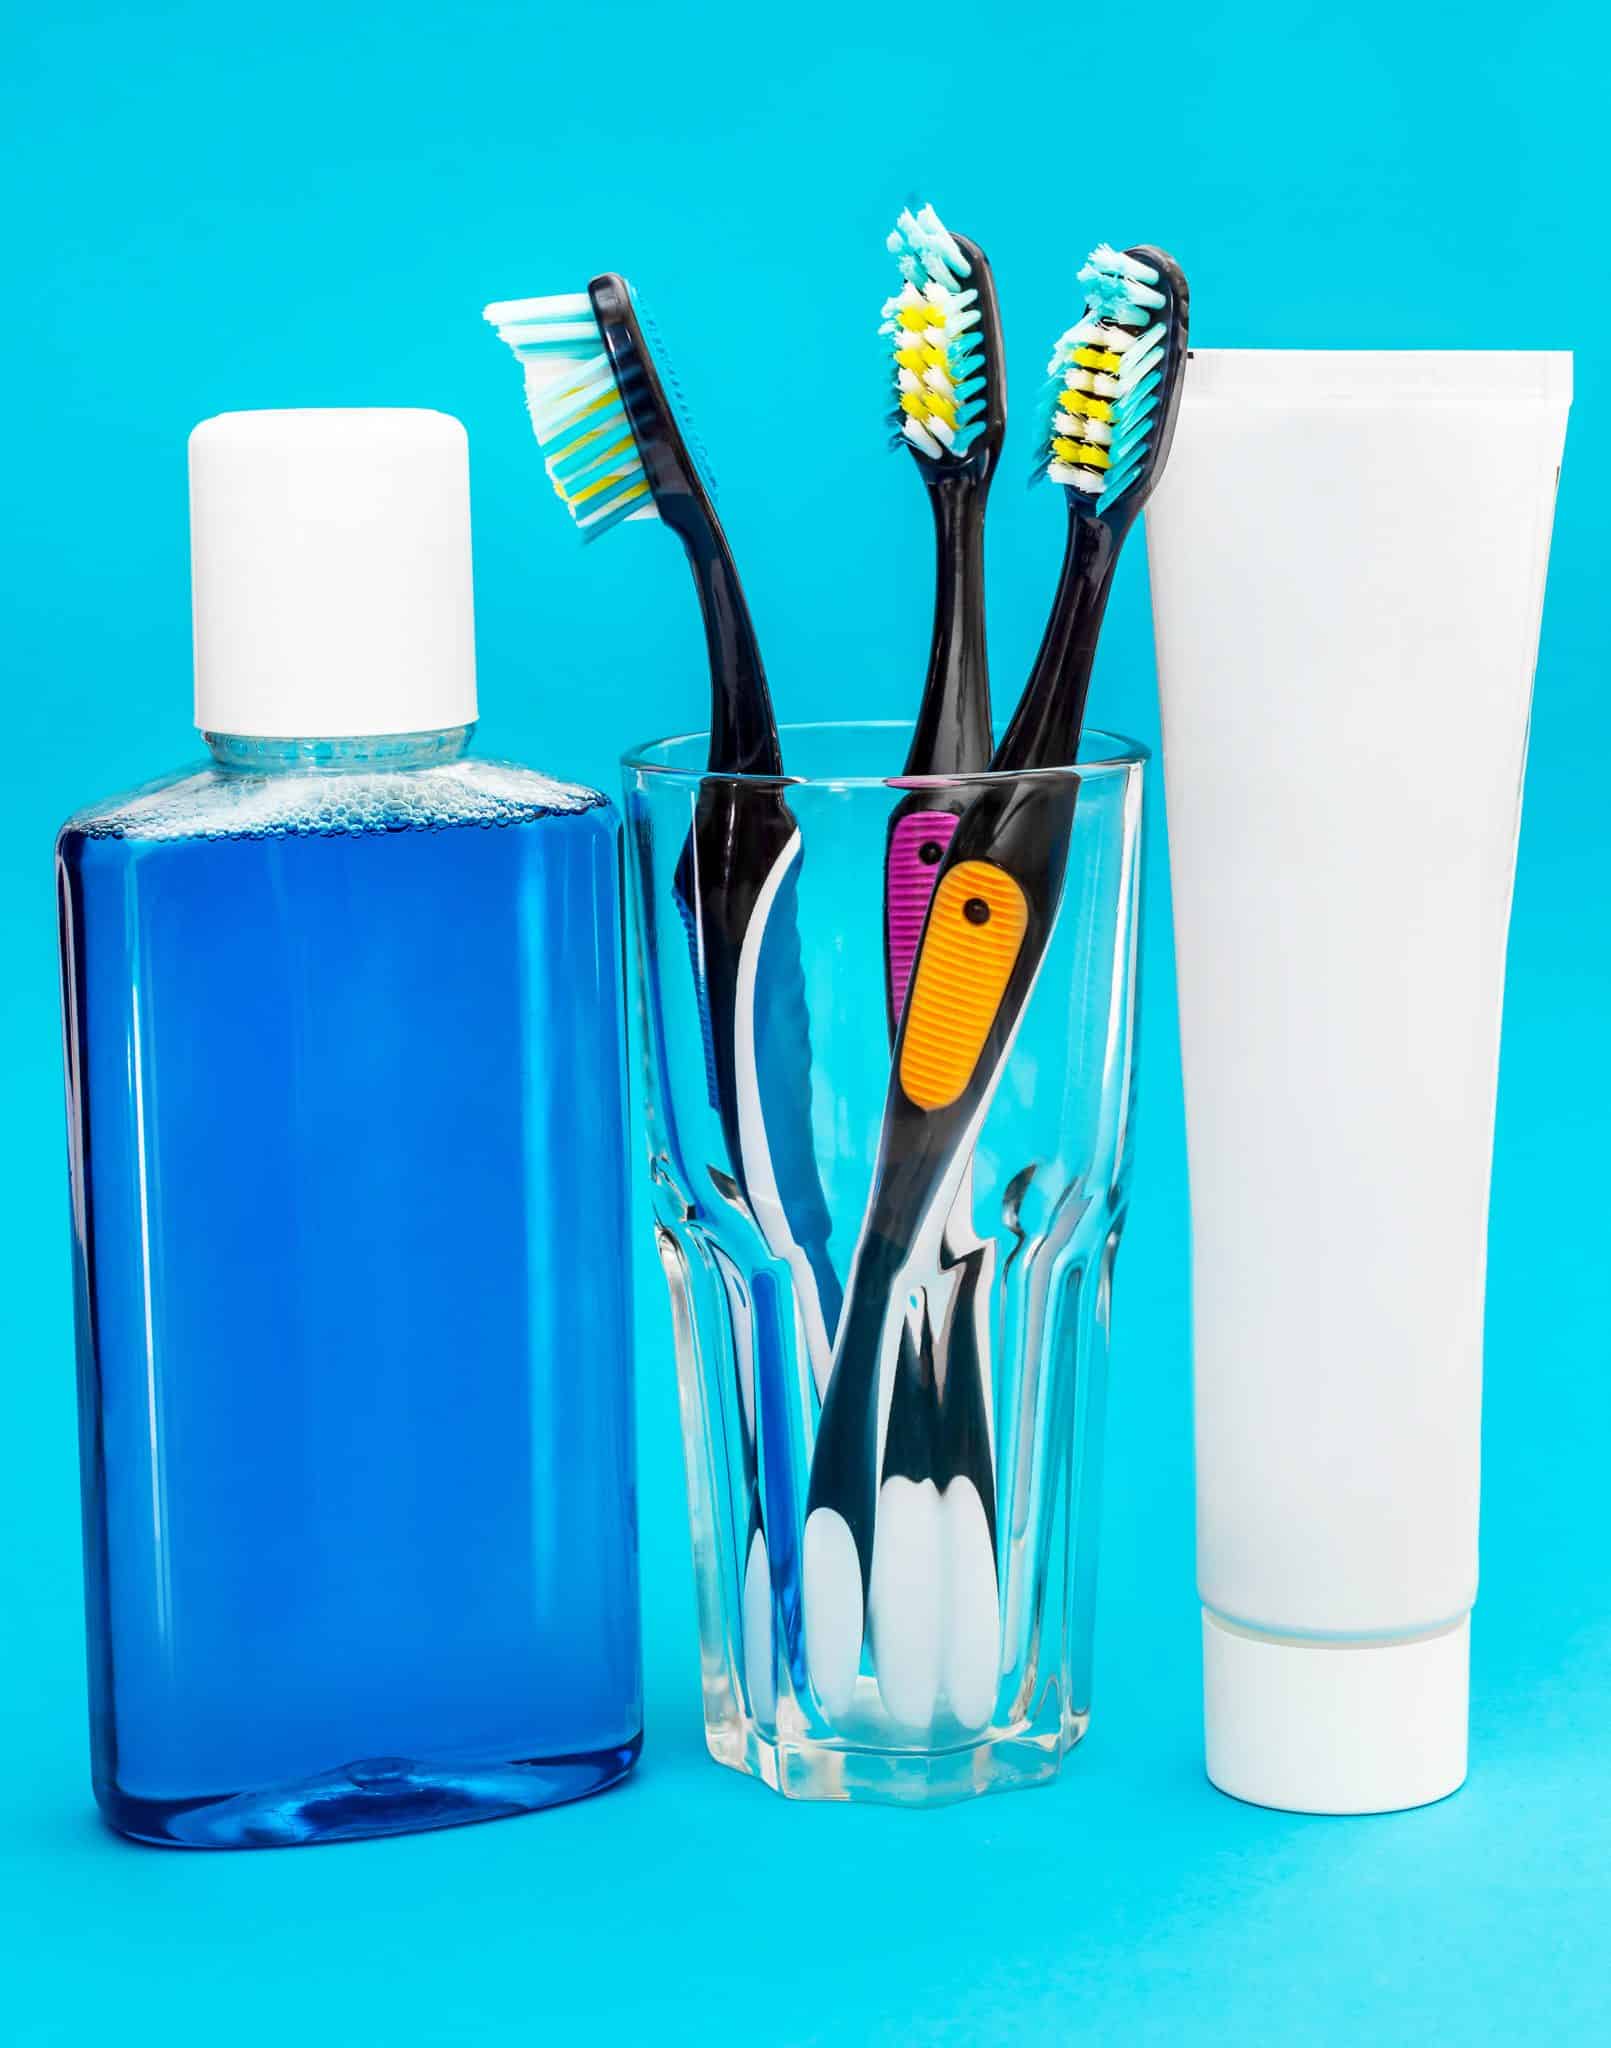 Das Foto zeigt ein Zahnpflegeset mit Zahnbürsten in einem Glas, Zahnpasta und Mundspülung auf hellblauem Hintergrund.